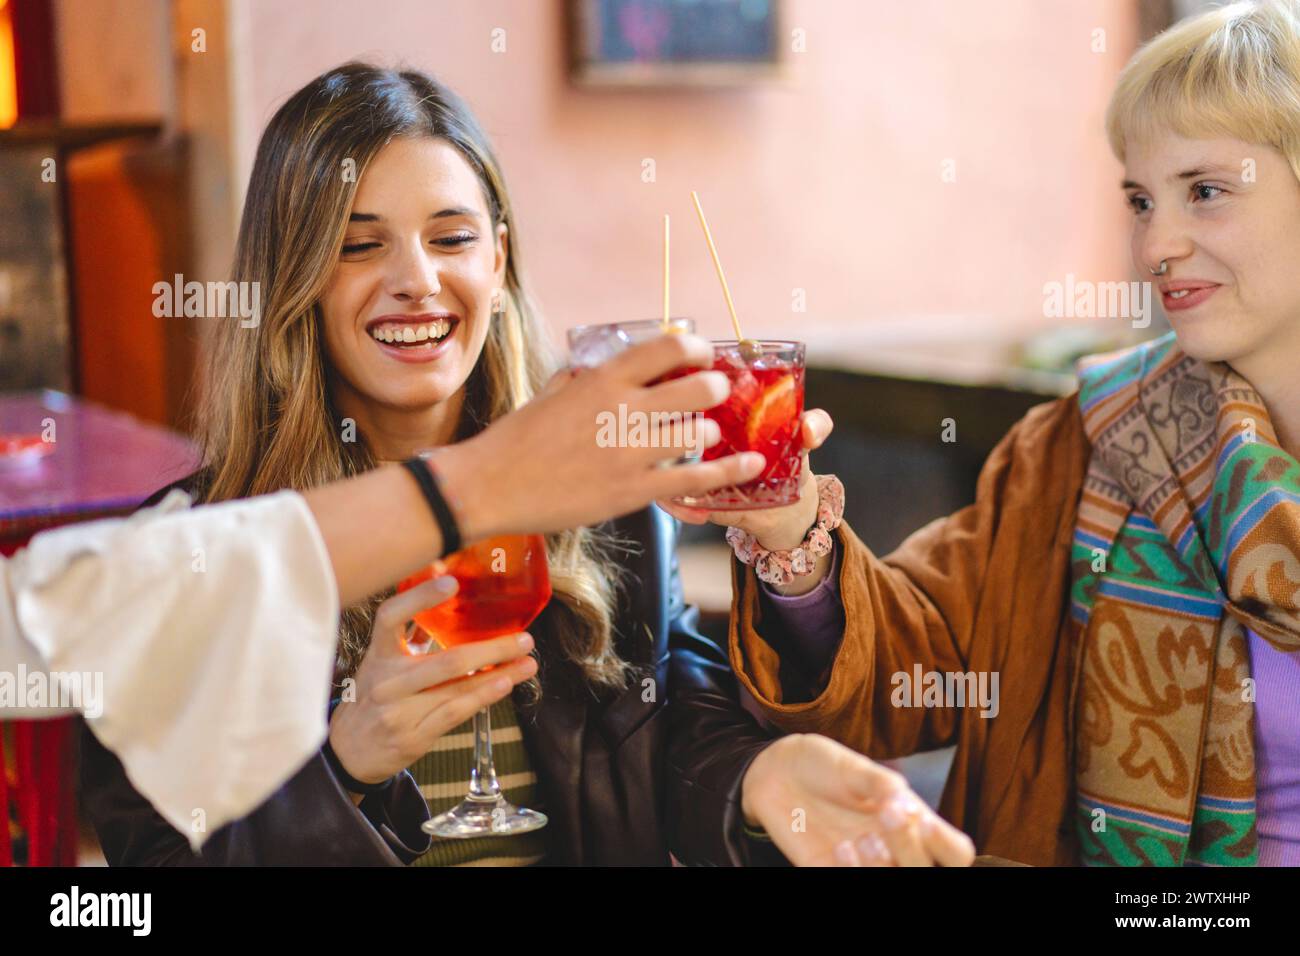 Lächelnde Freunde, die an einem gemütlichen Ort mit bunten Cocktails toben - junge Frauen feiern Freundschaft, genießen Drinks - entspannte Atmosphäre, lebhafte S Stockfoto